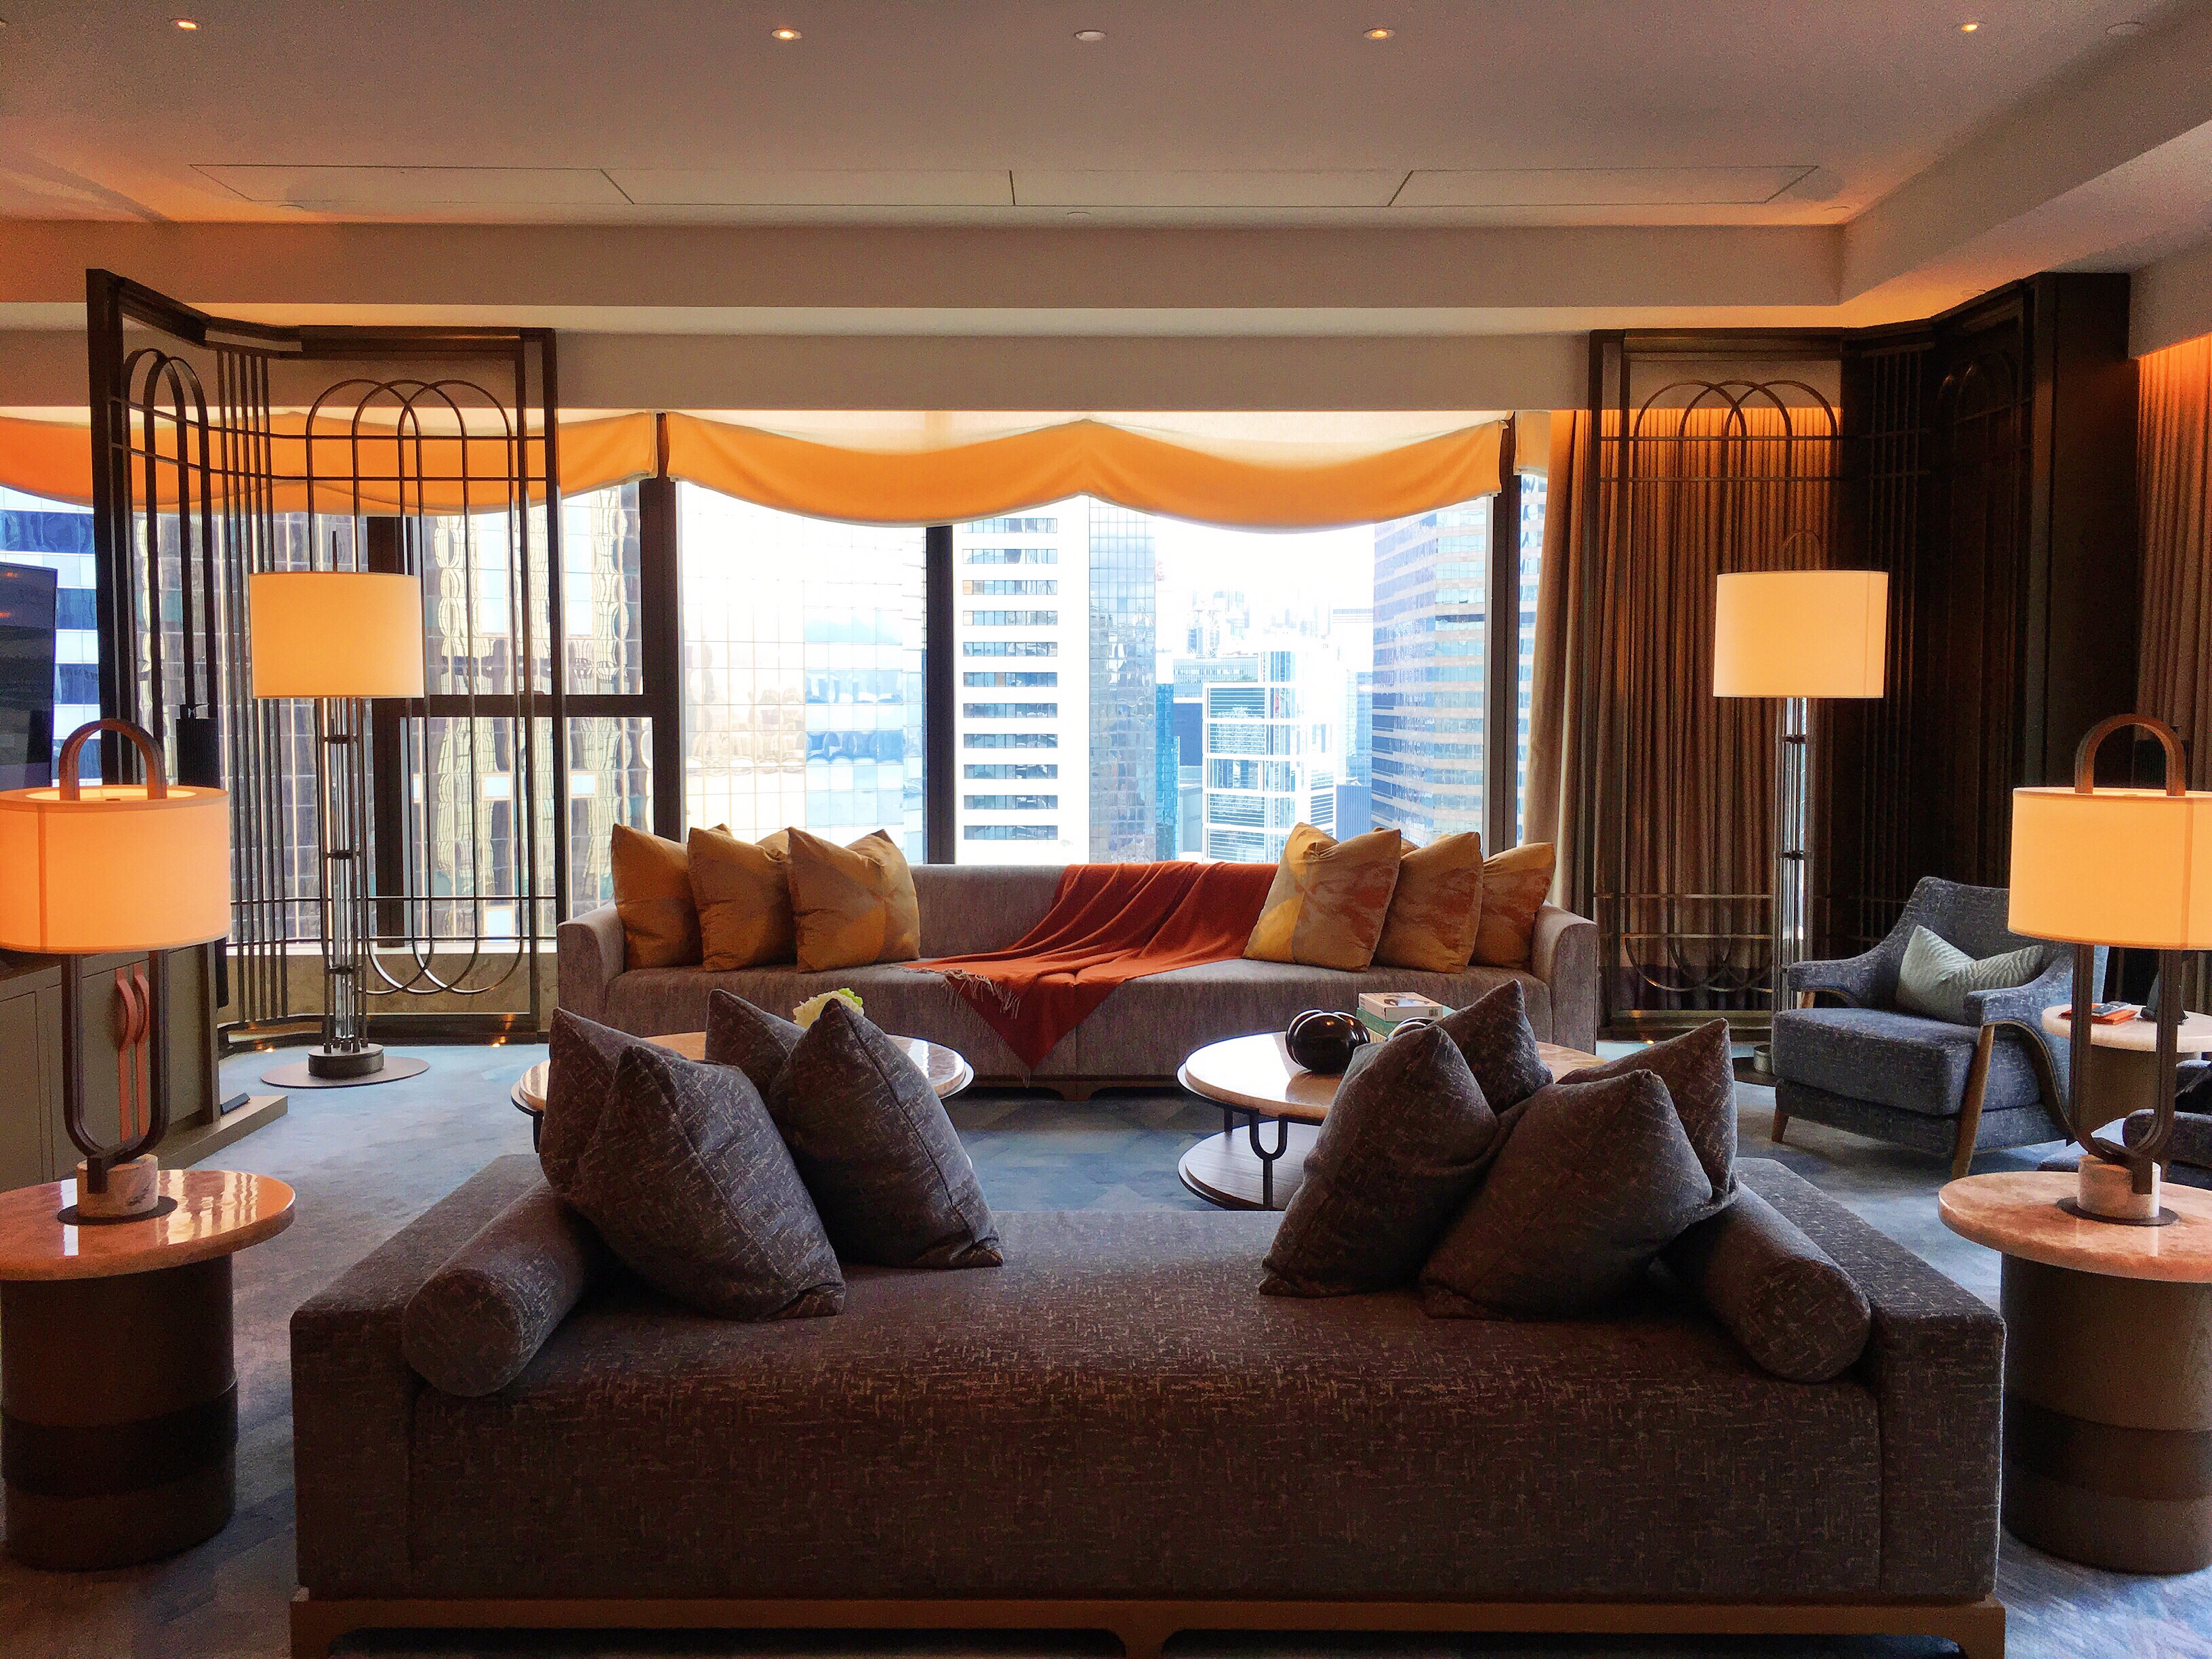 环球旅行:万豪全球第7000家酒店,香港瑞吉-总统套房